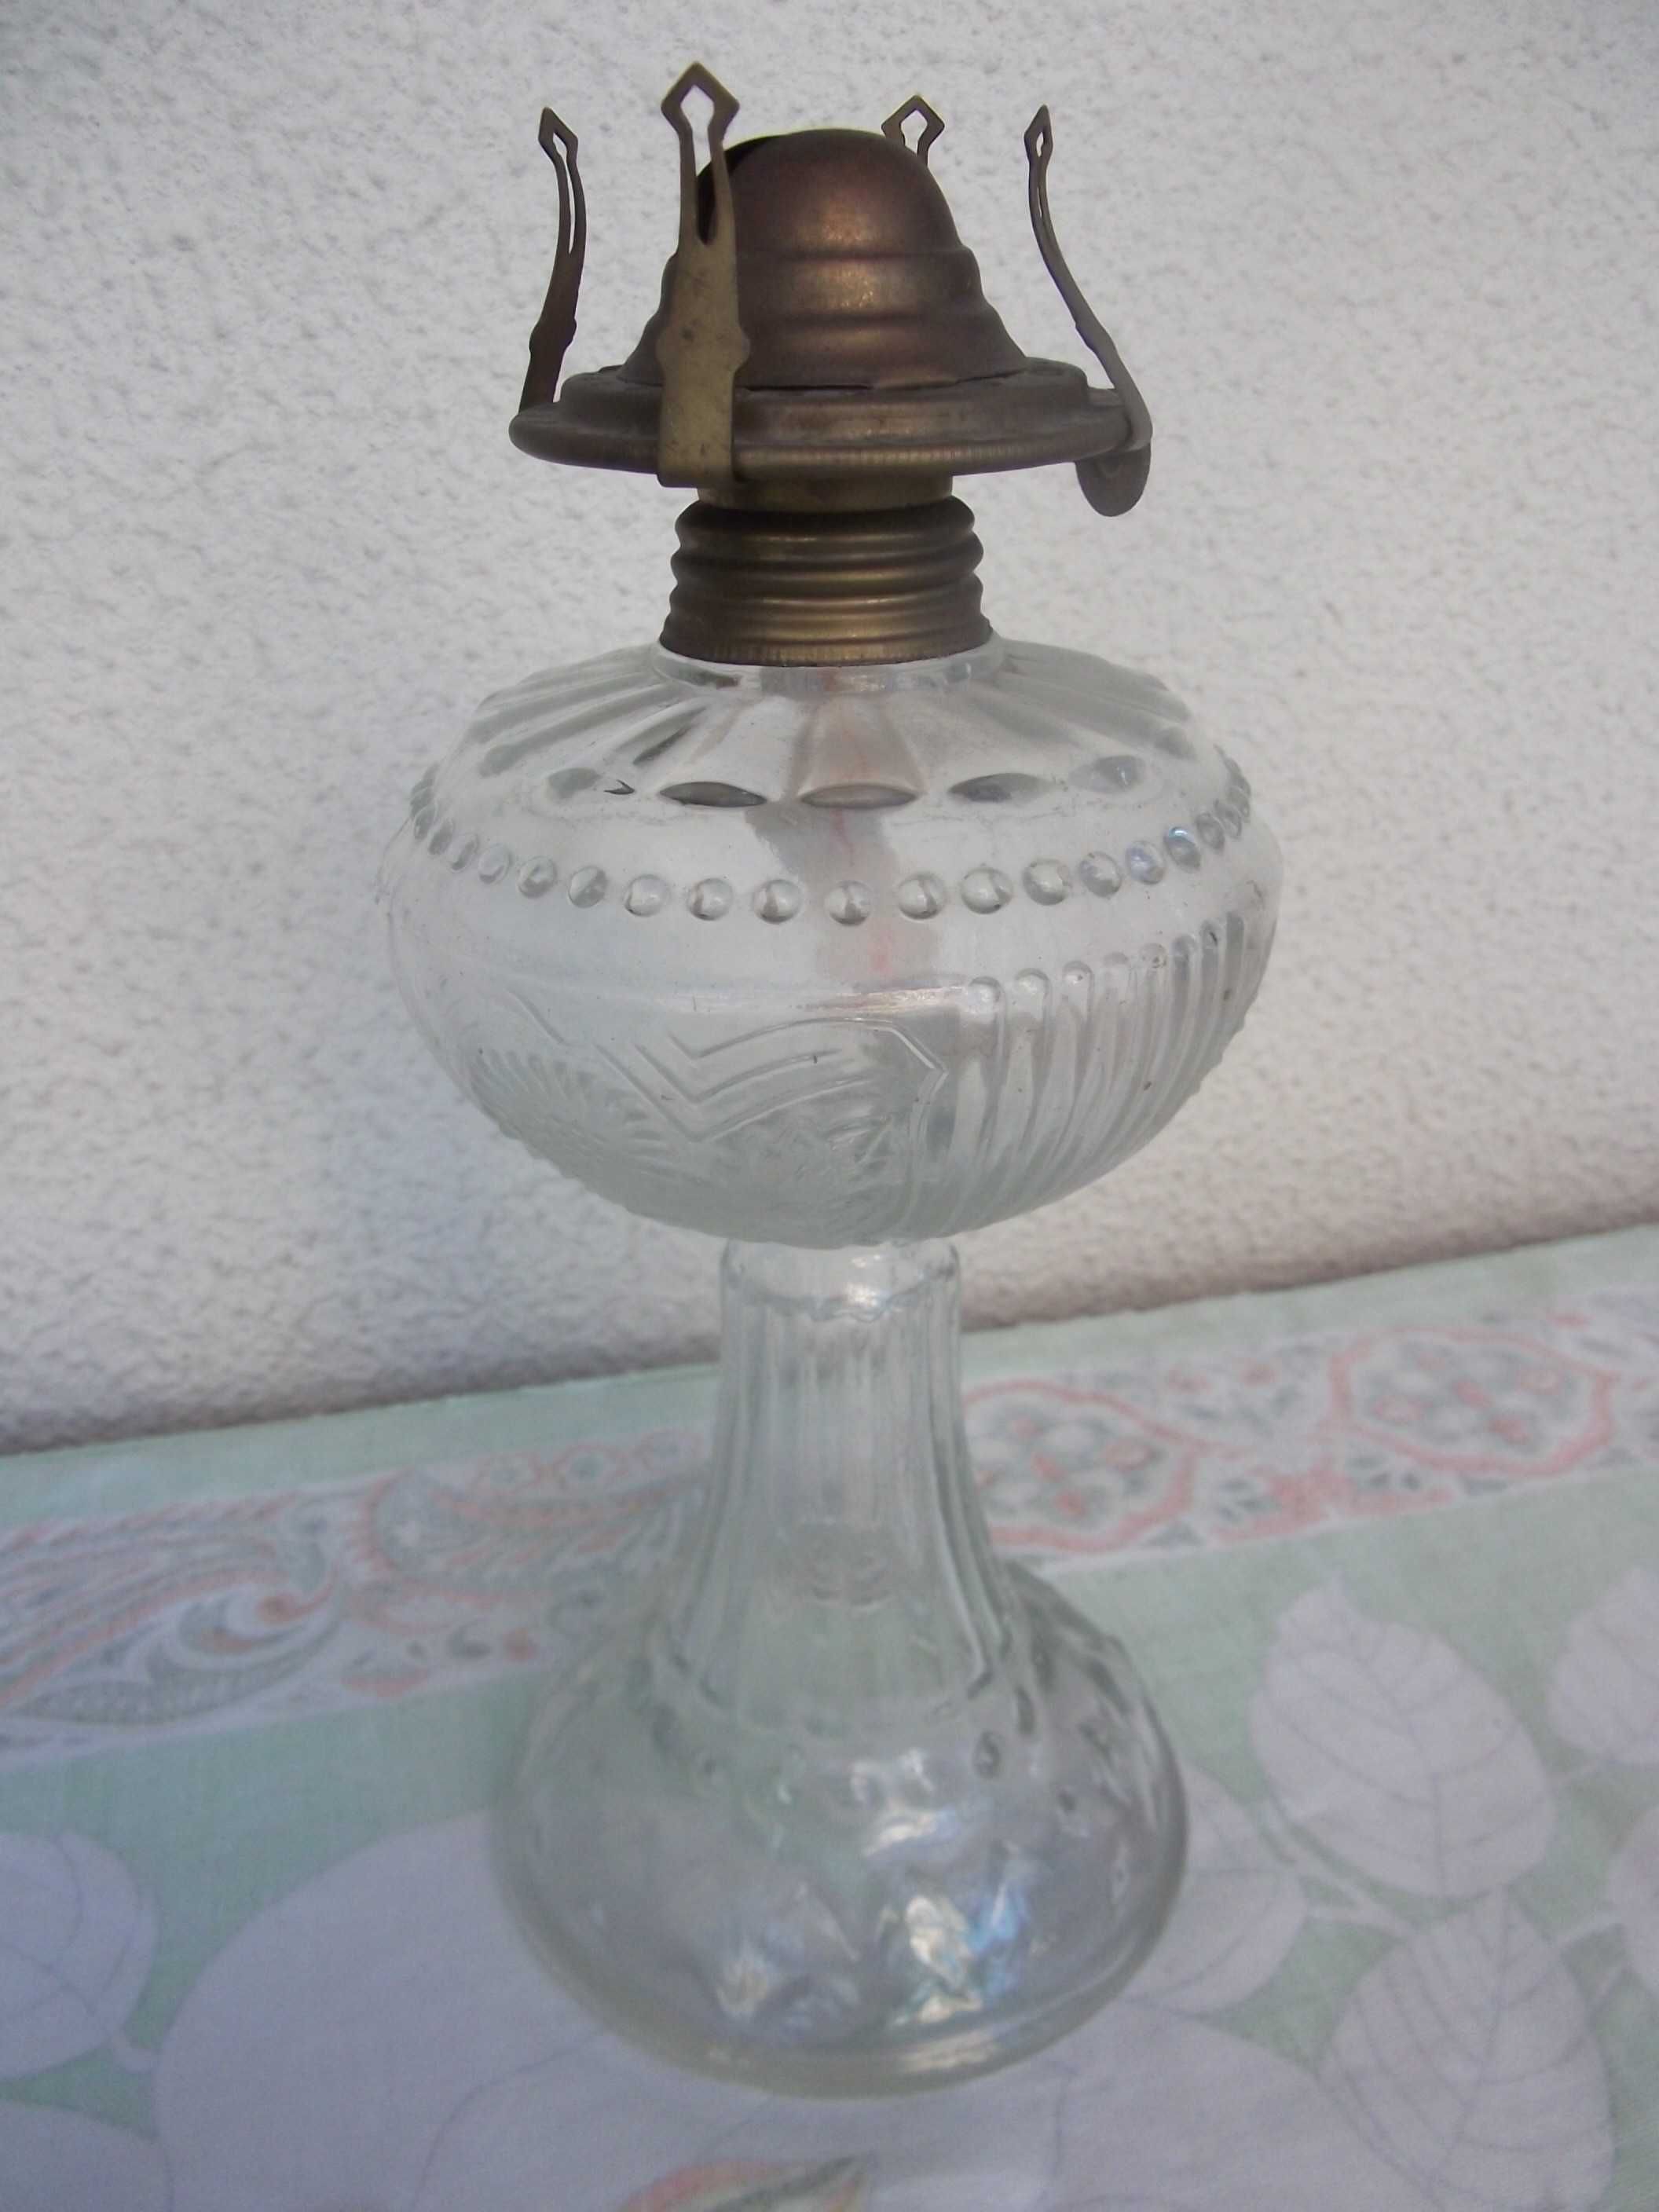 Galheteiro e candeeiro petróleo em vidro / Glass cruet & oil lamp